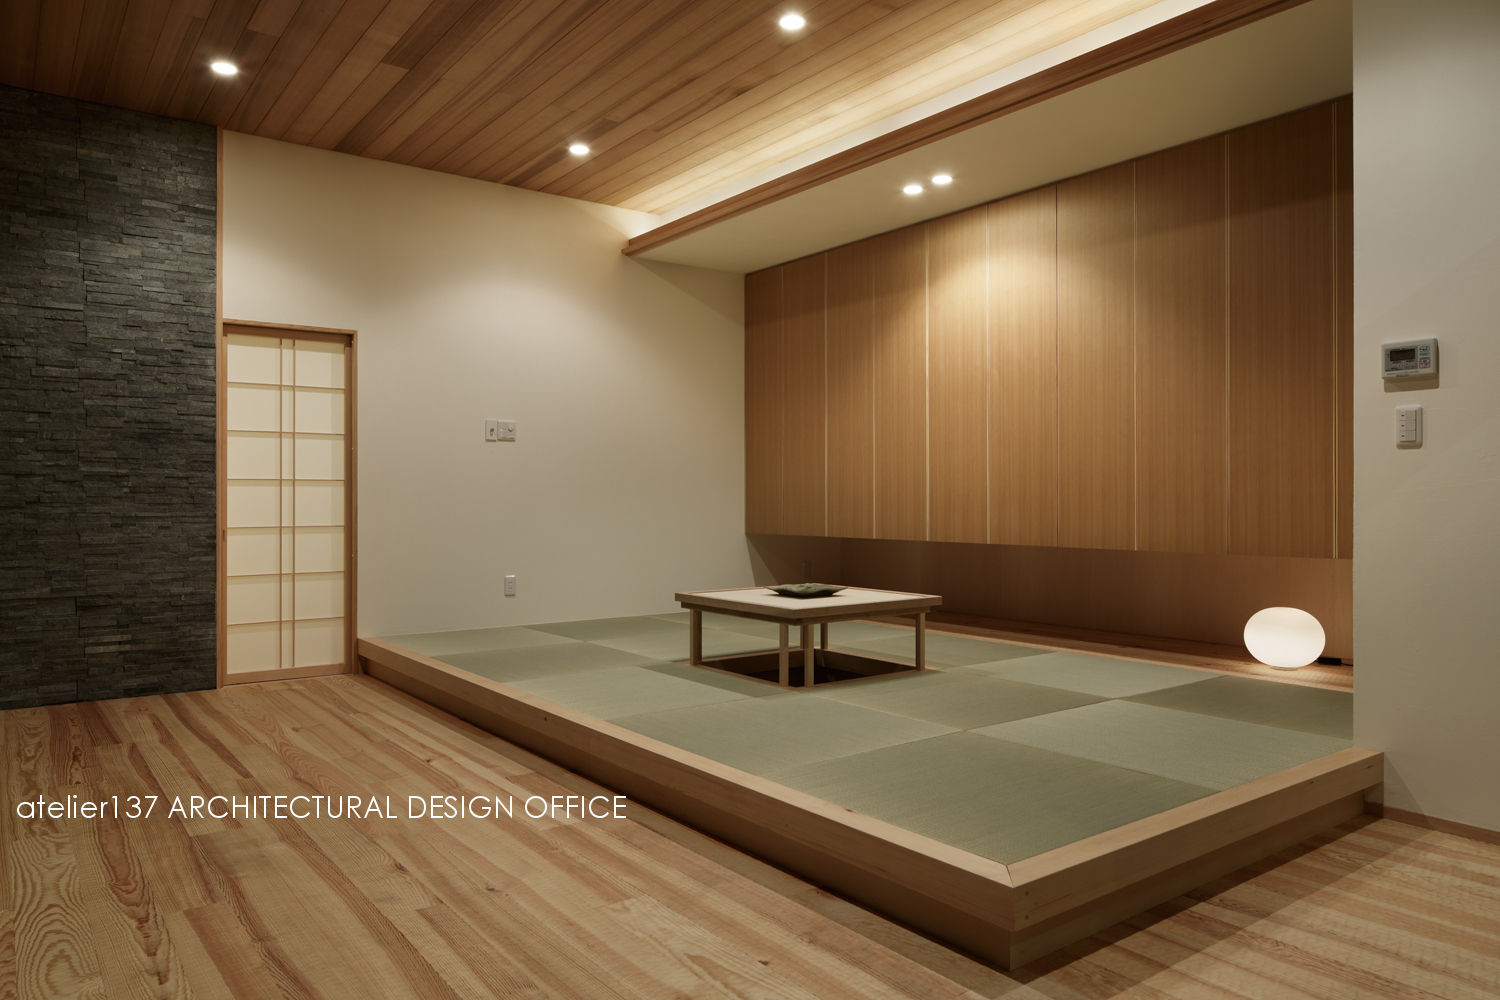 040軽井沢Cさんの家（増築）, atelier137 ARCHITECTURAL DESIGN OFFICE atelier137 ARCHITECTURAL DESIGN OFFICE Salon moderne